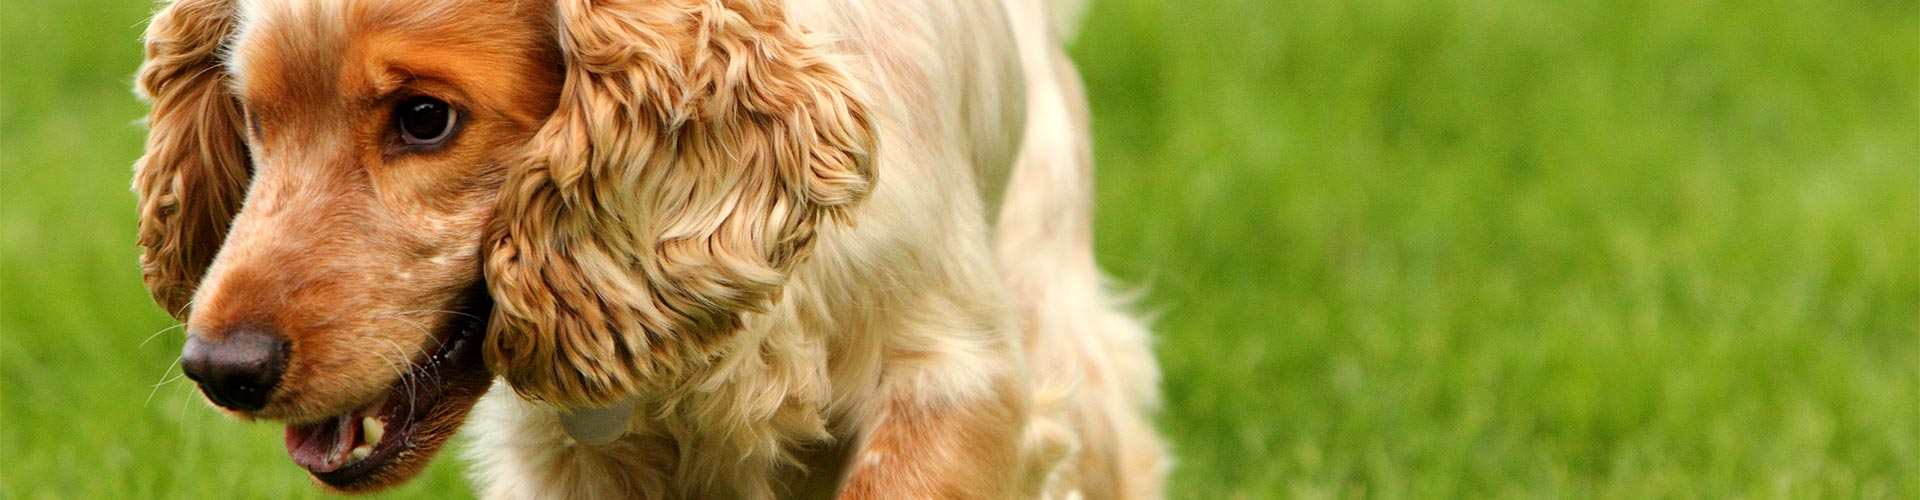 Casas rurales que admiten perros en Bocos